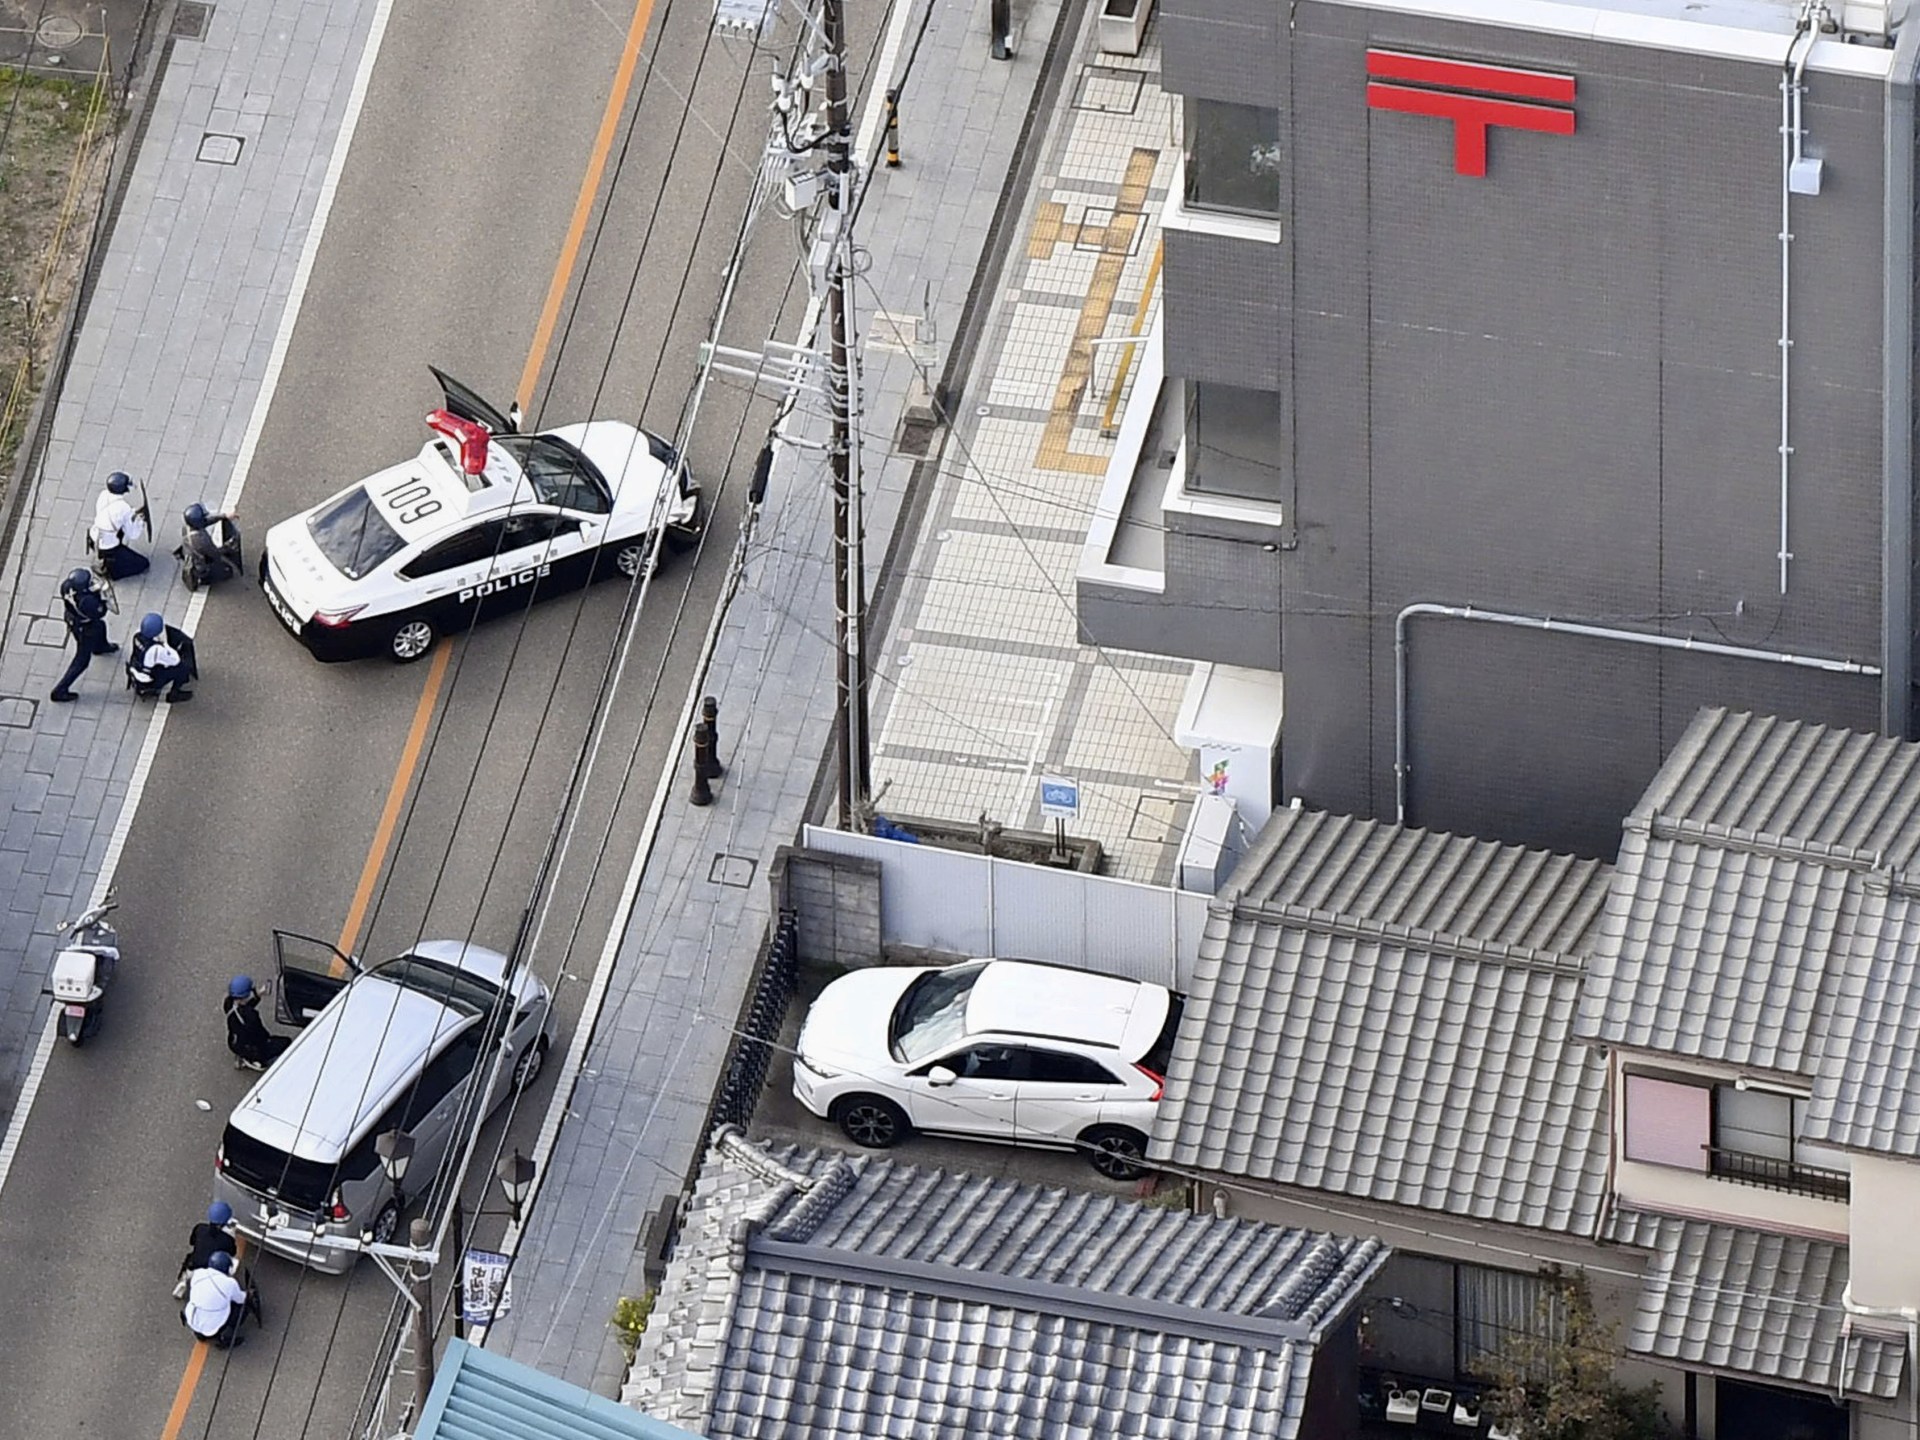 Japan police arrest suspected gunman after hostage standoff